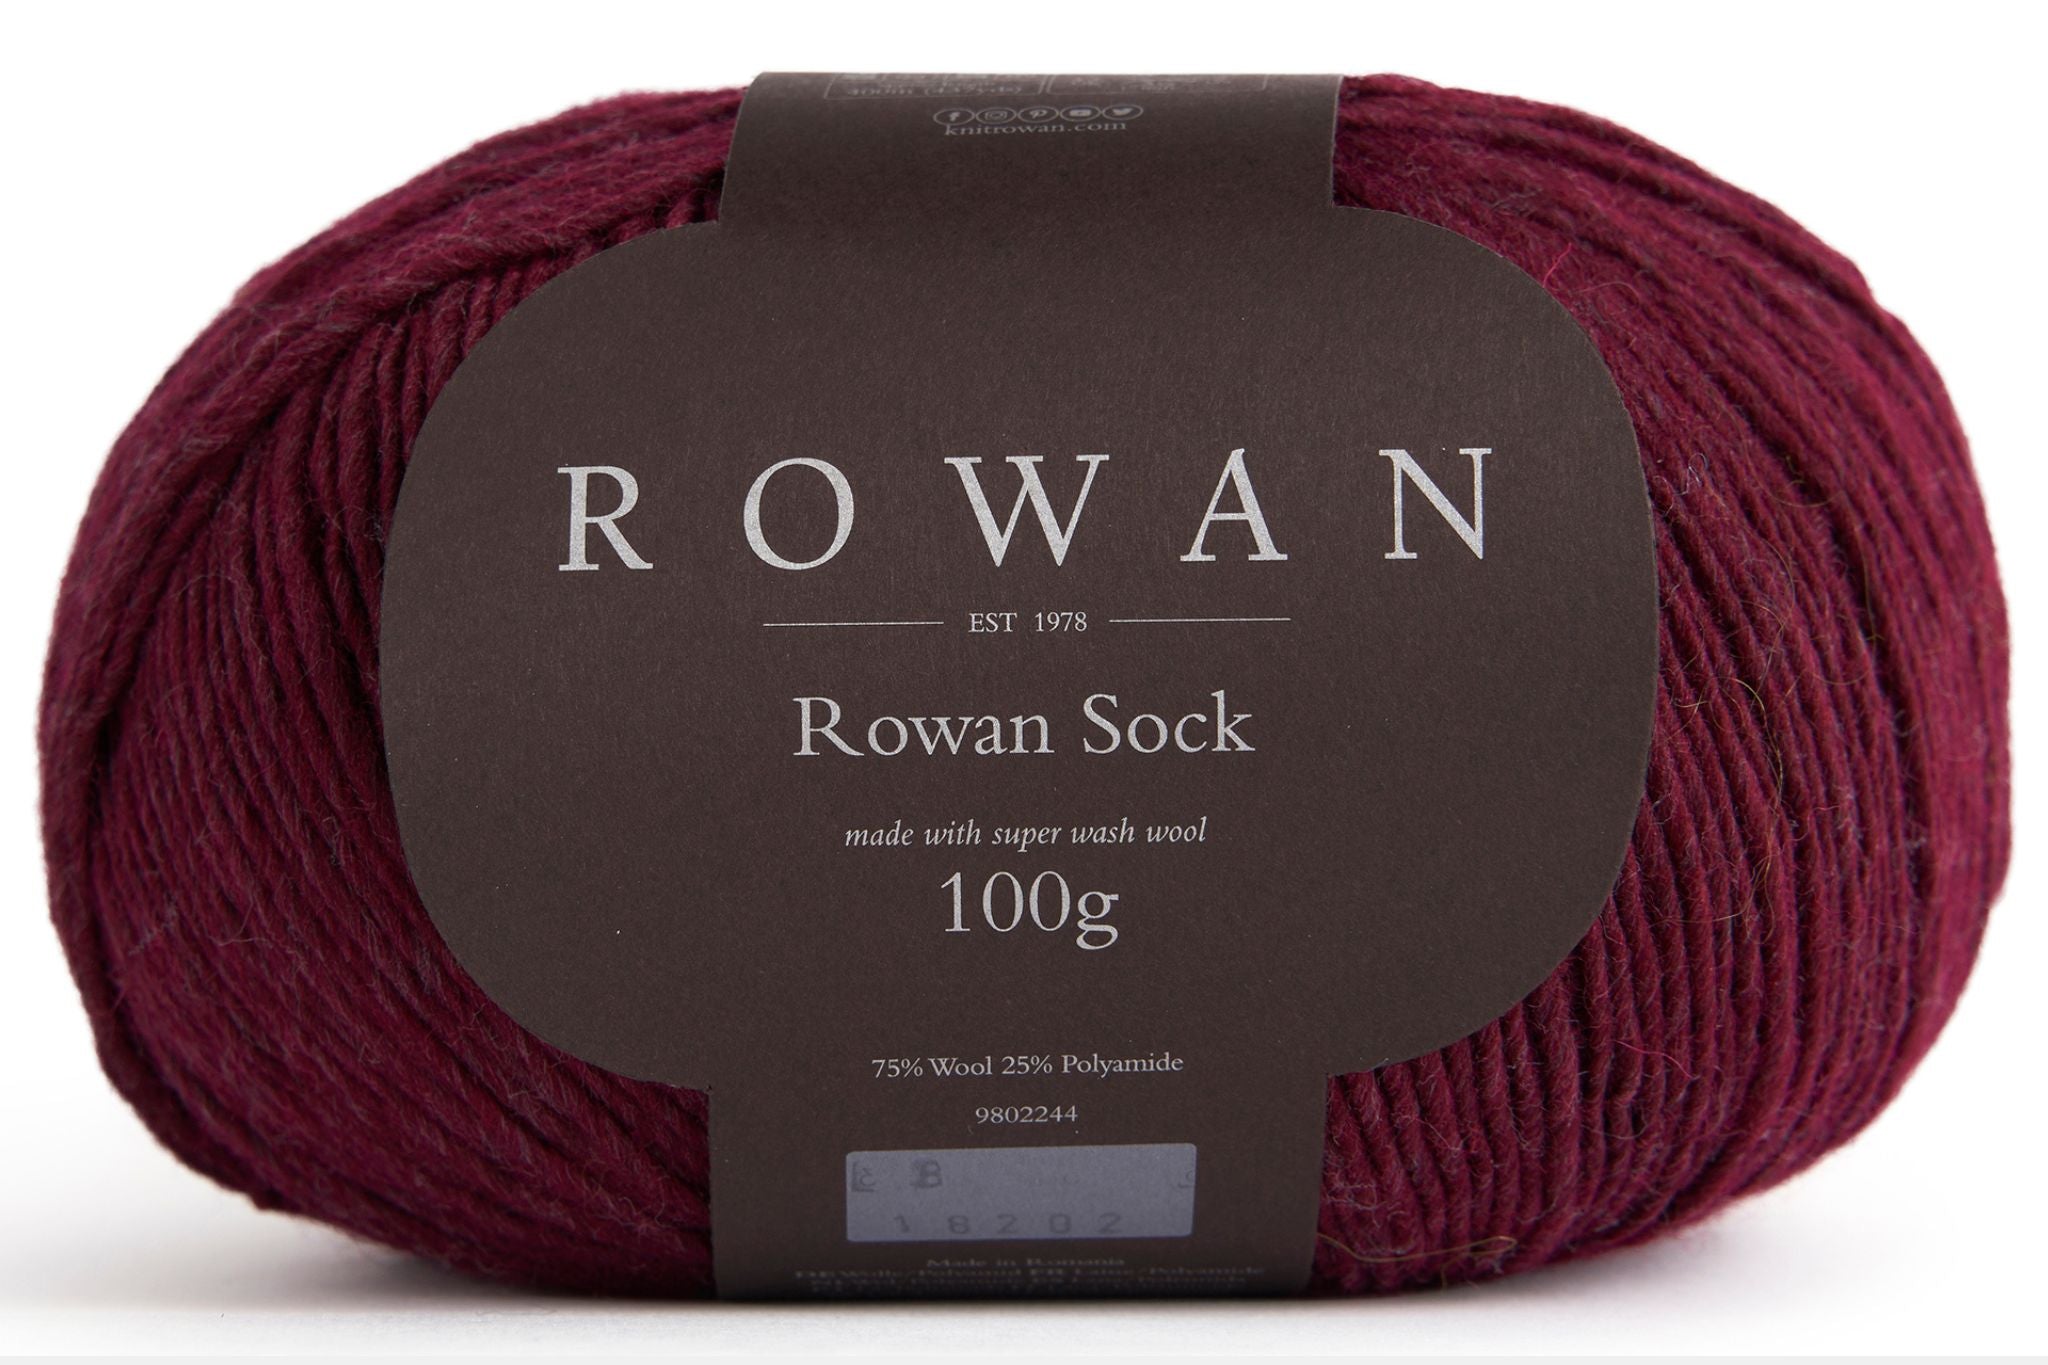 Rowan Sock in Ruby-008